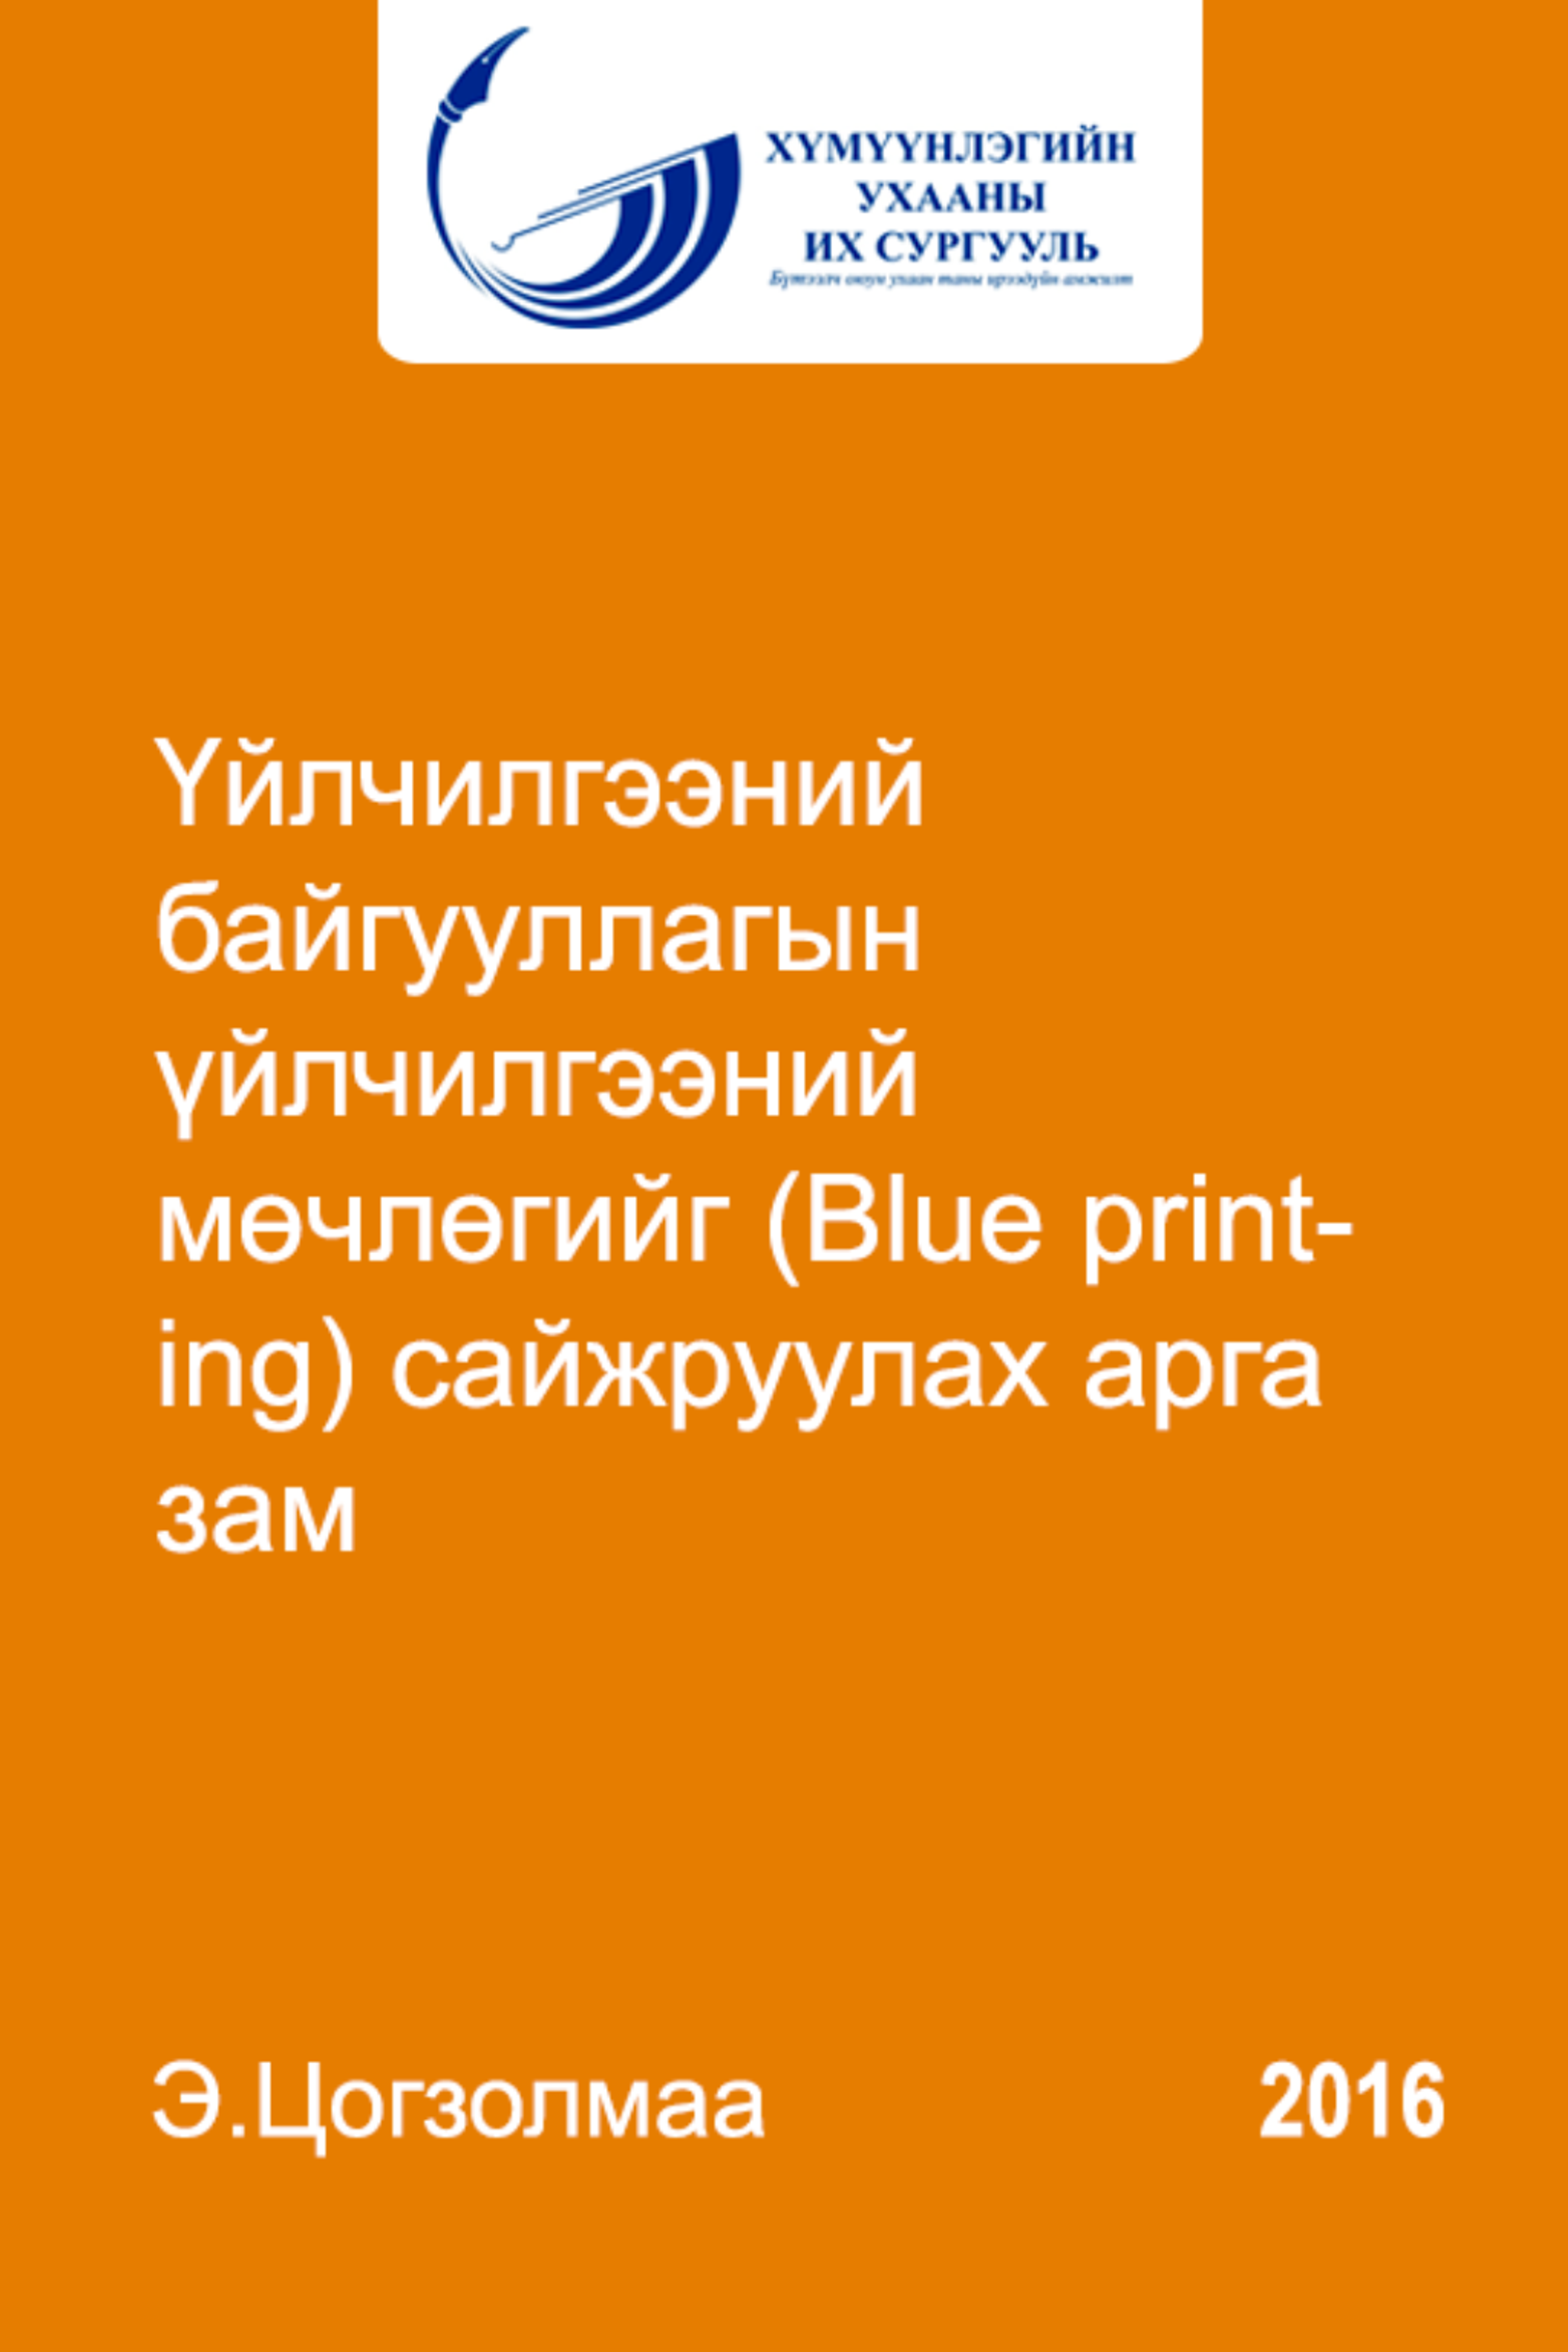 Үйлчилгээний байгууллагын үйлчилгээний мөчлөгийг (Blue printing) сайжруулах арга зам